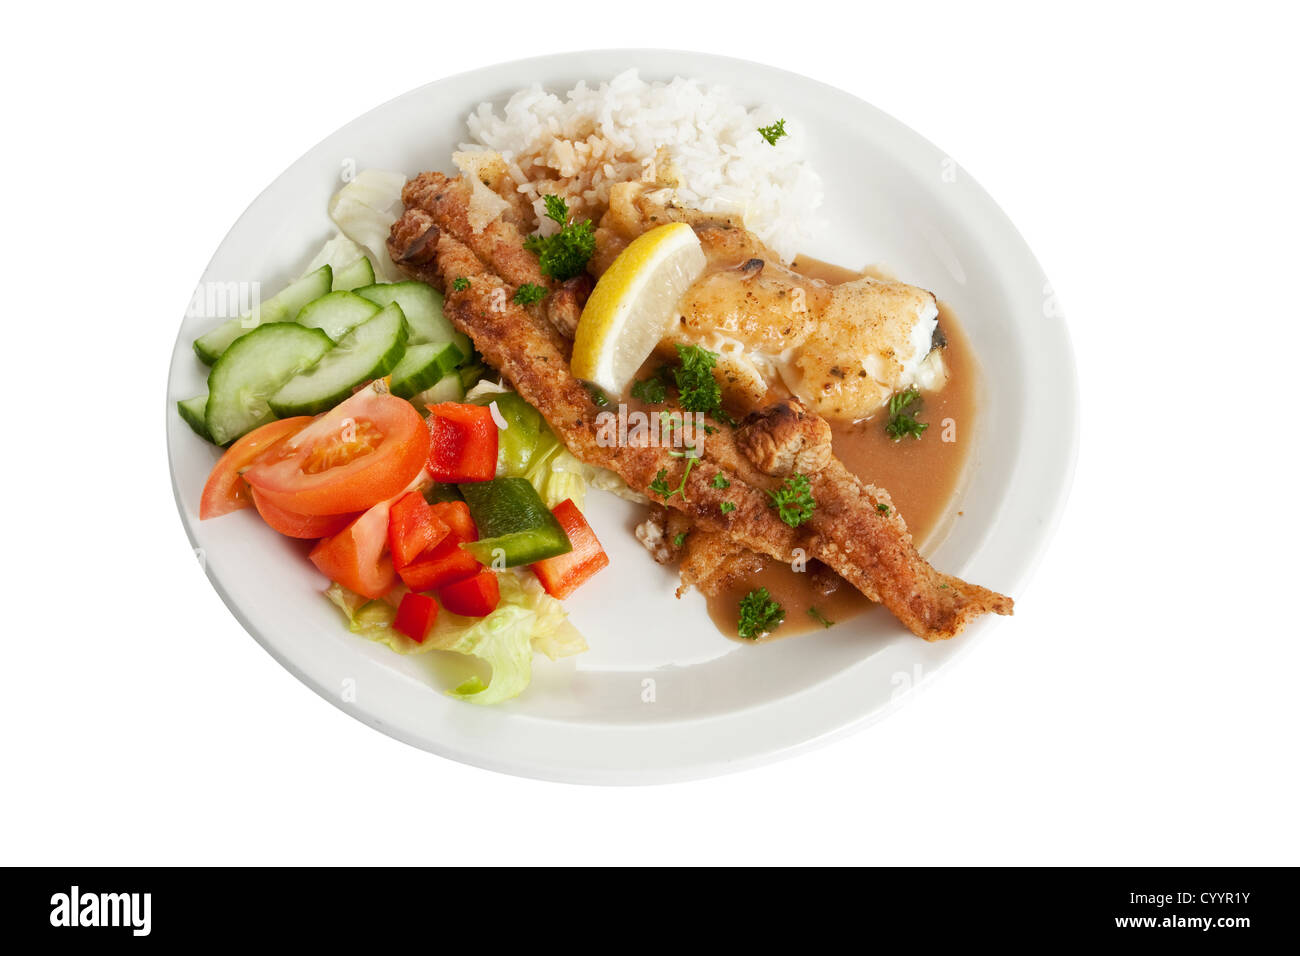 Ein Gericht aus gebratenem Fisch und Reis mit der empfohlenen Futtermenge für durchschnittlich große Person. Stockfoto